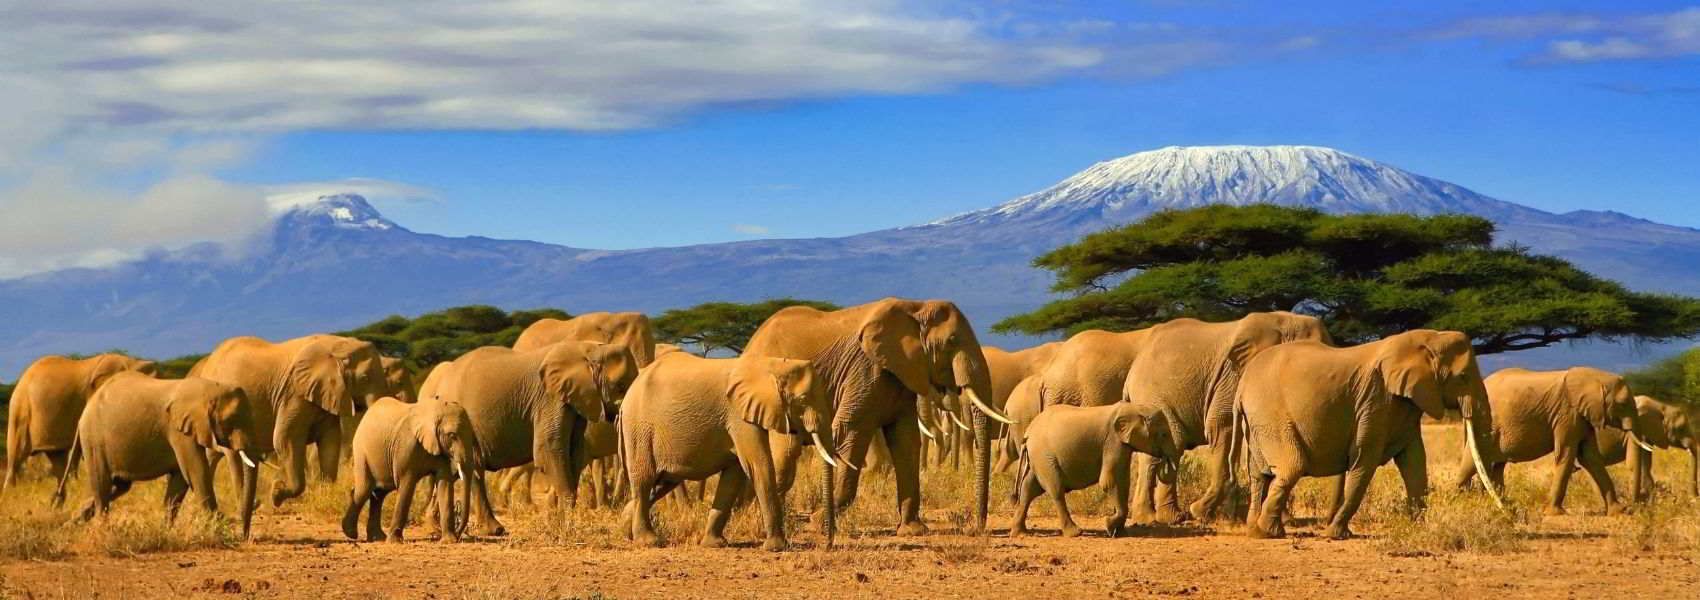 Cosa vedere in kenya, i luoghi più belli da visitare